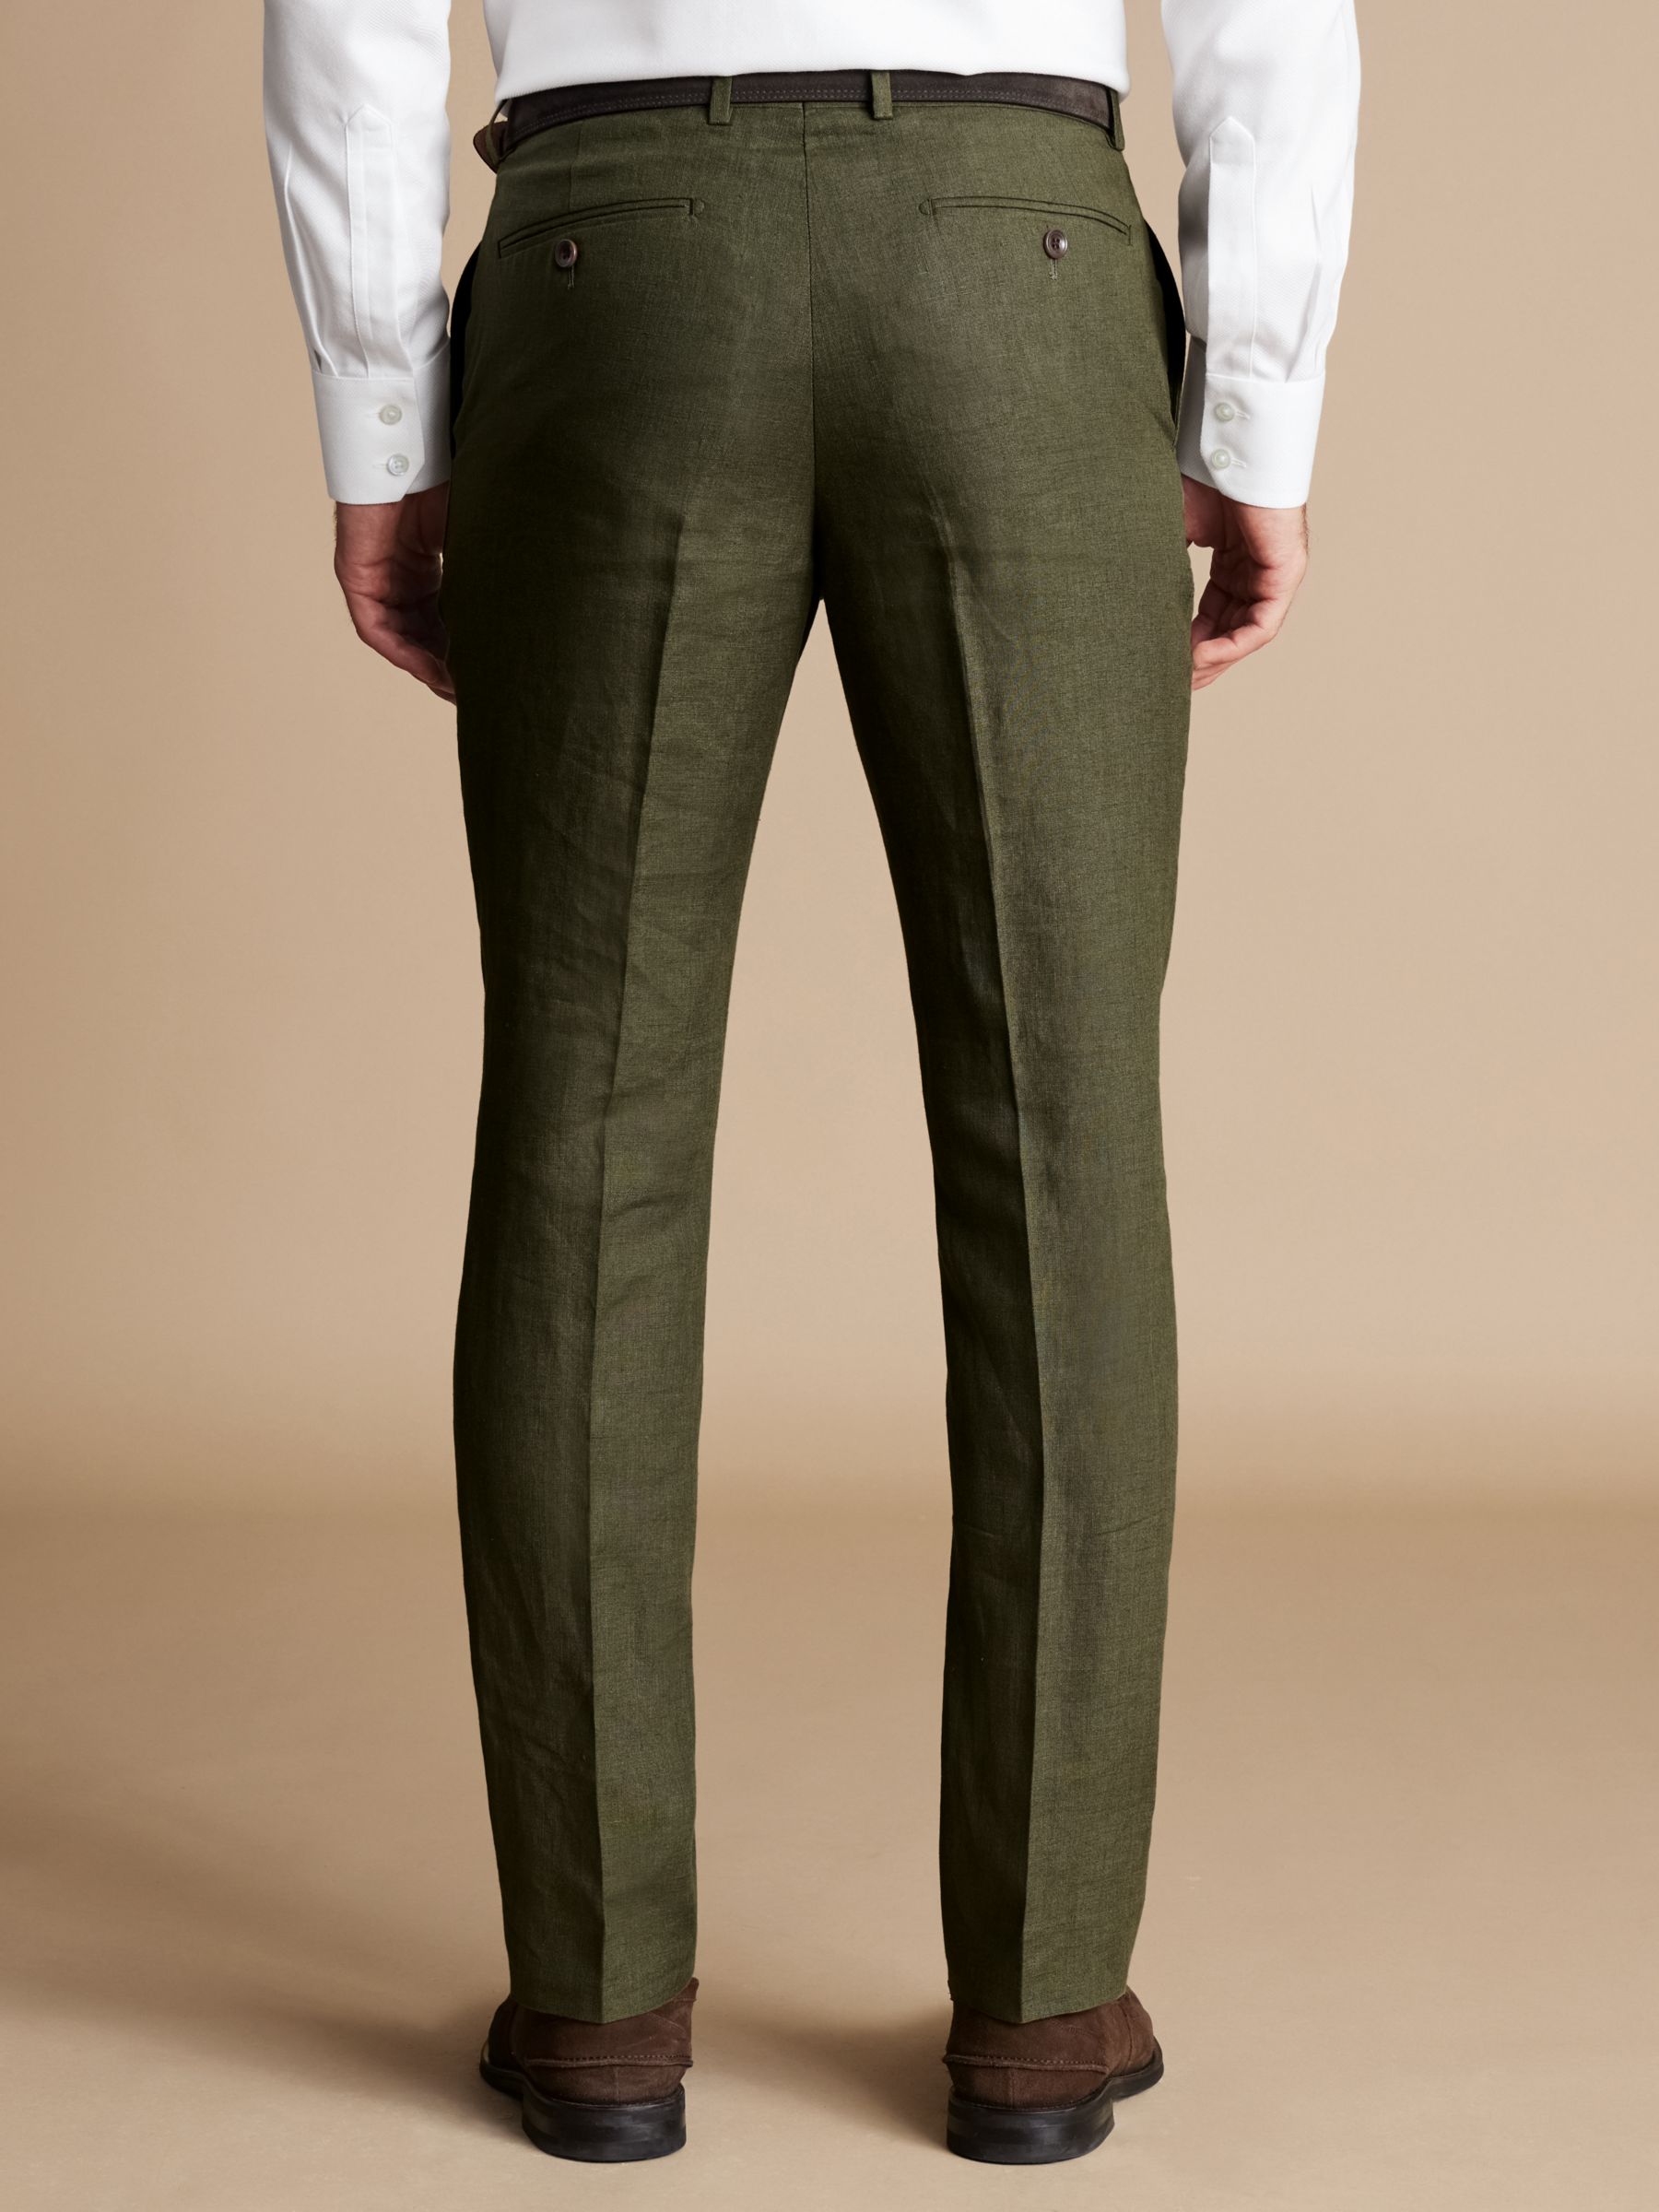 Charles Tyrwhitt Slim Fit Linen Trousers, Olive Green, 30R